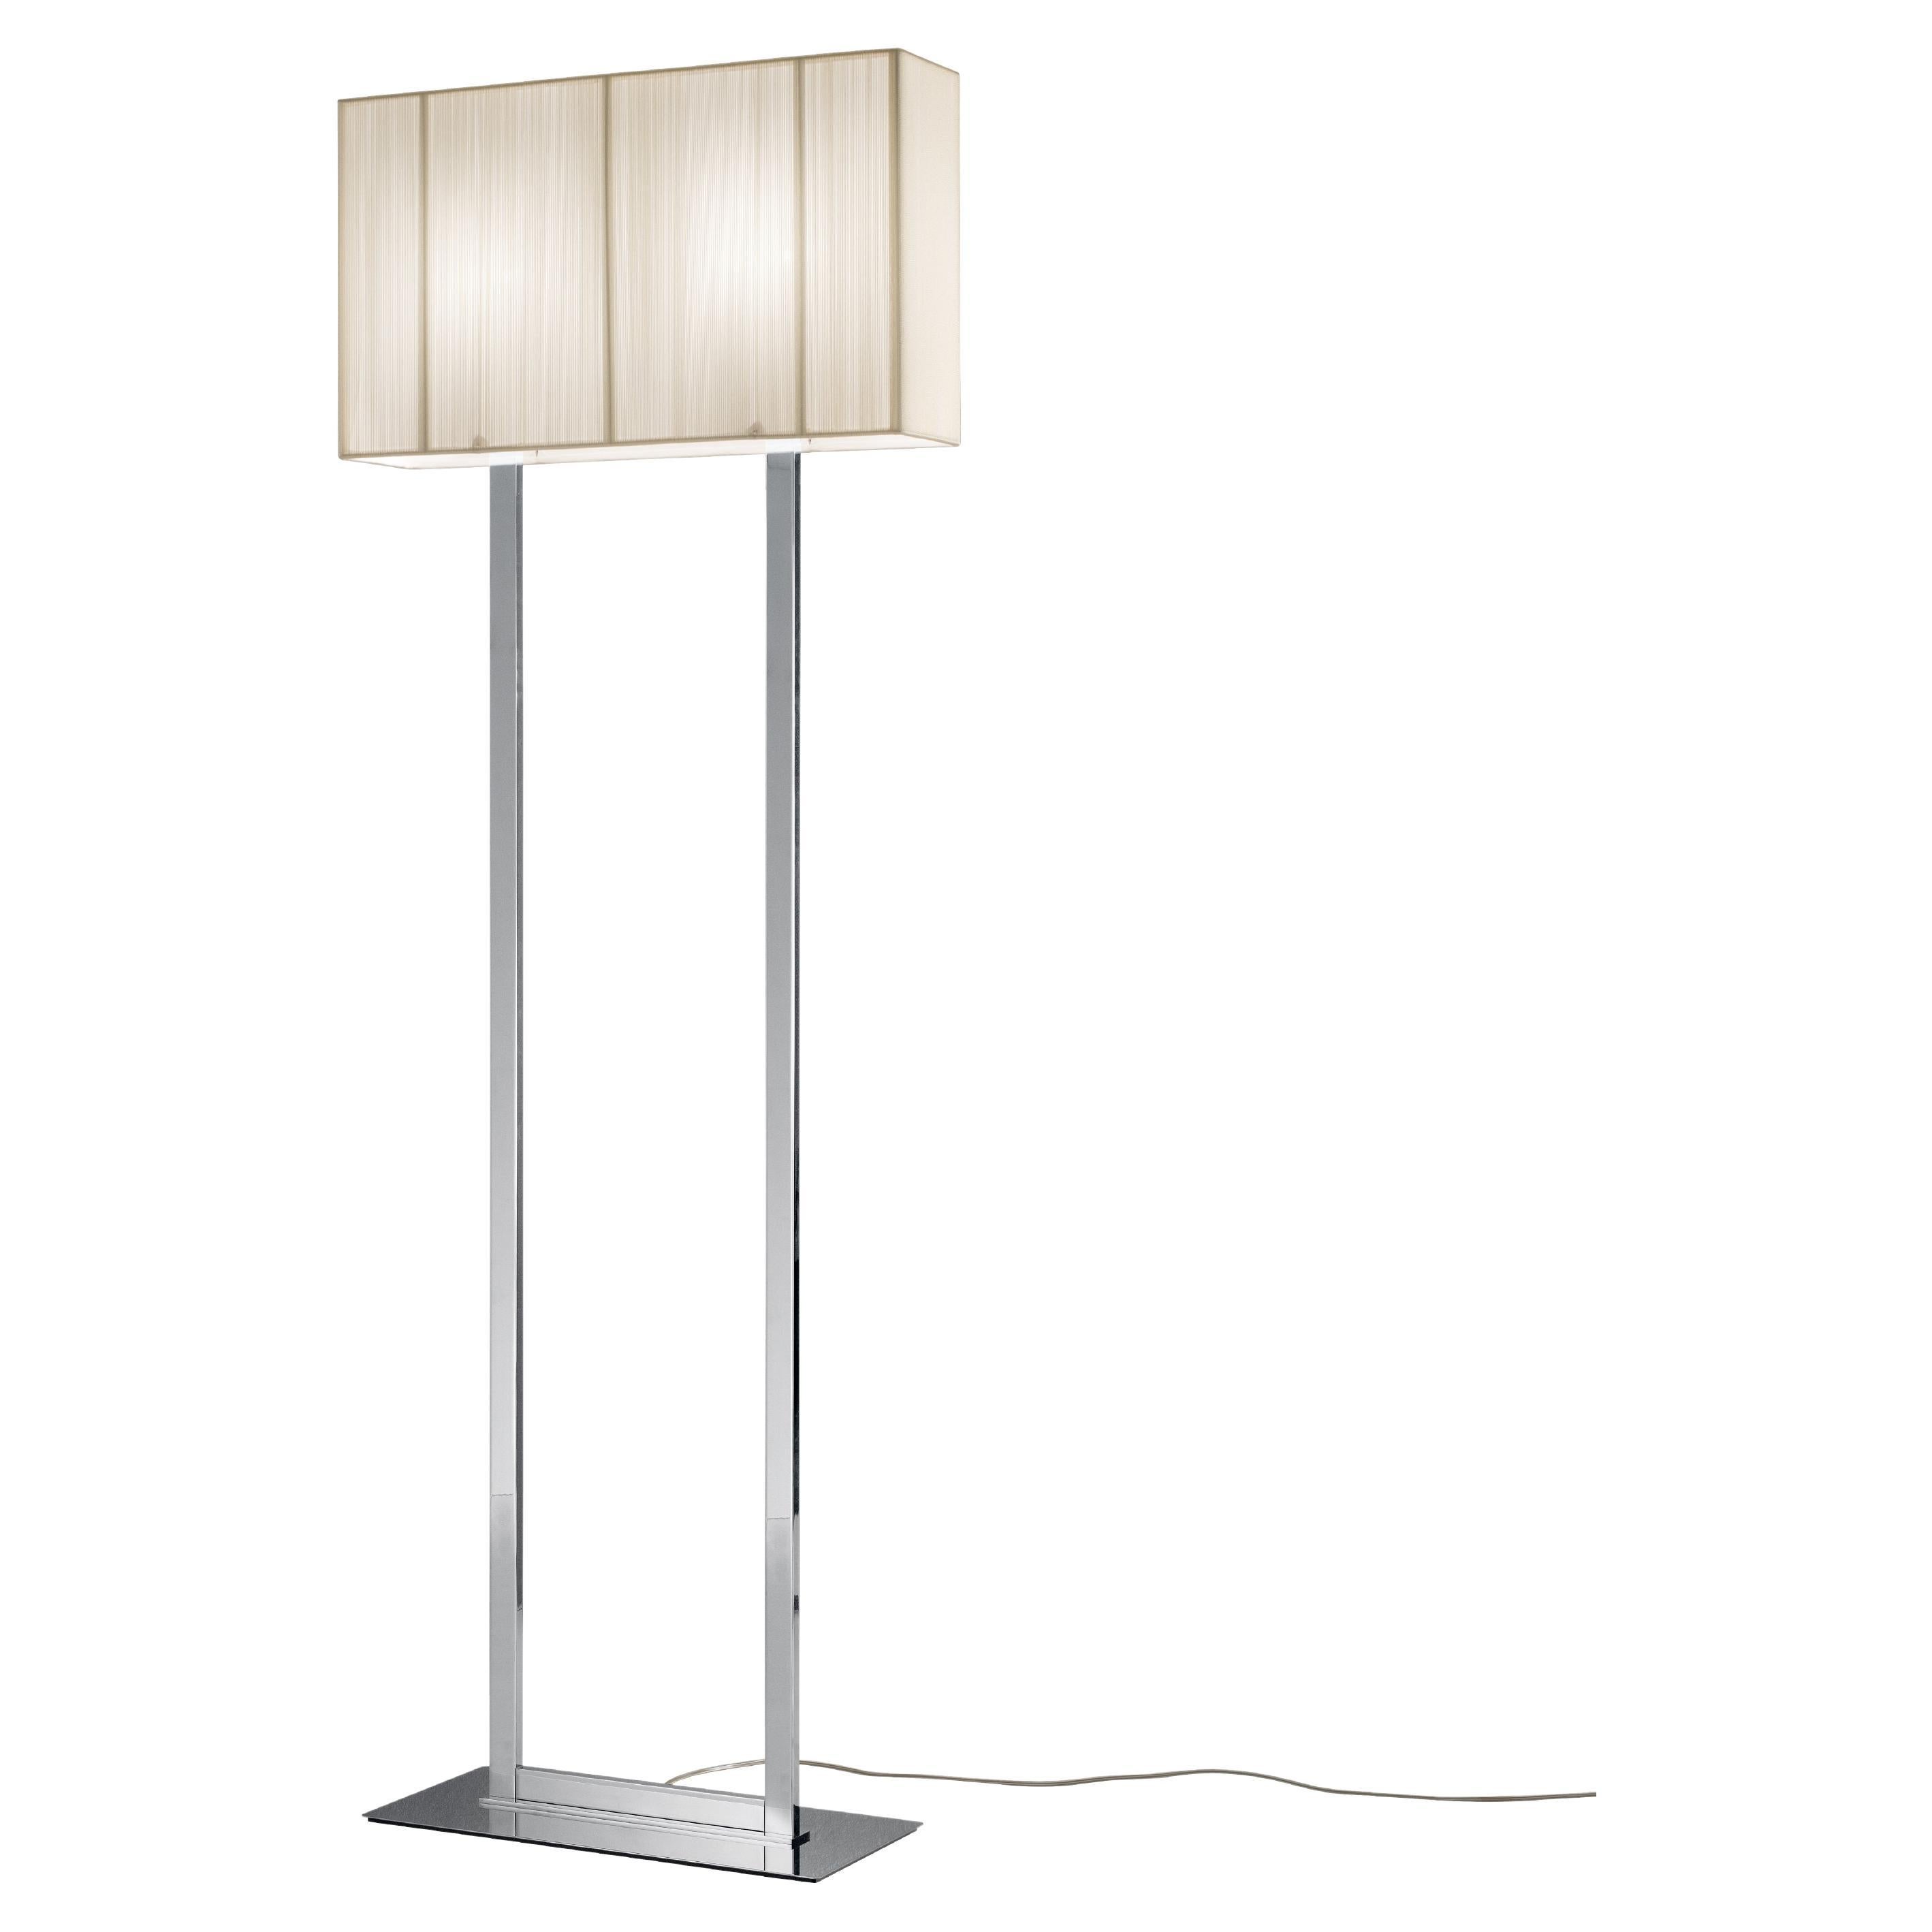 Axolight Clavius Medium Floor Lamp in White Lampshade and Chrome Finish